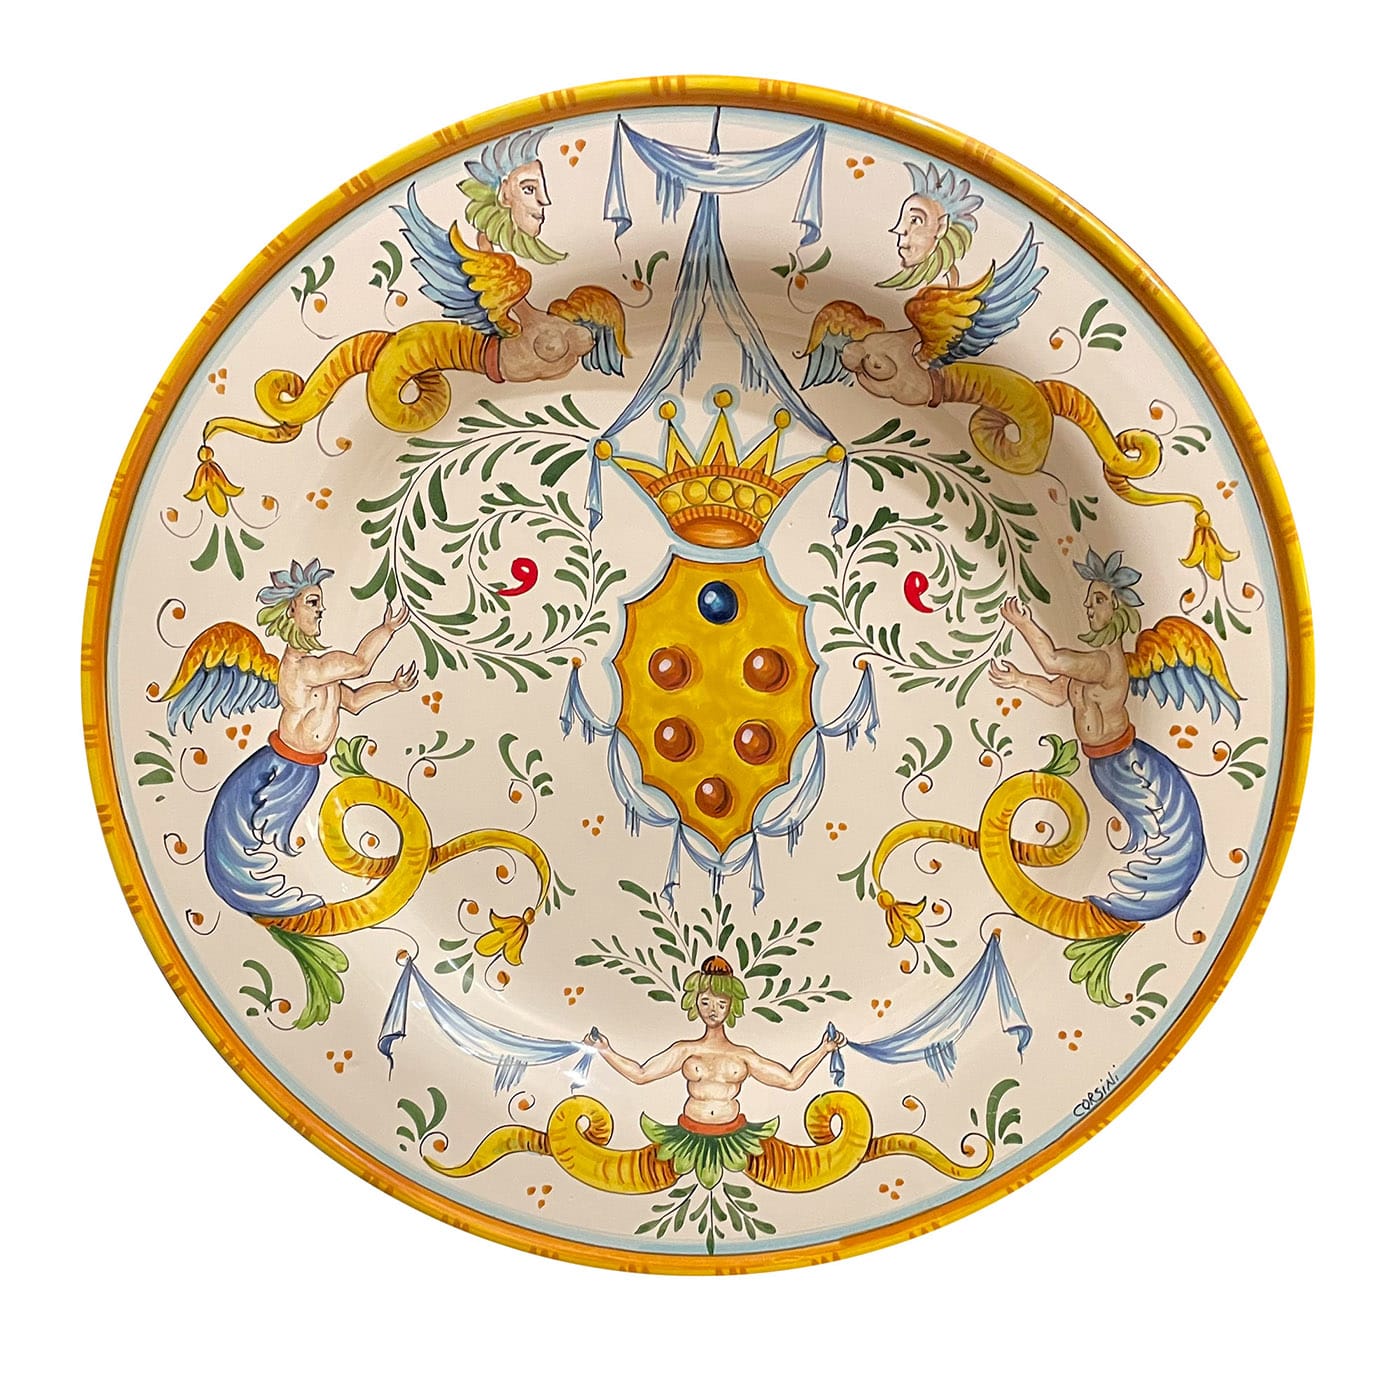 Raphaelesque-Style Polychrome Plate - Ceramiche Corsini